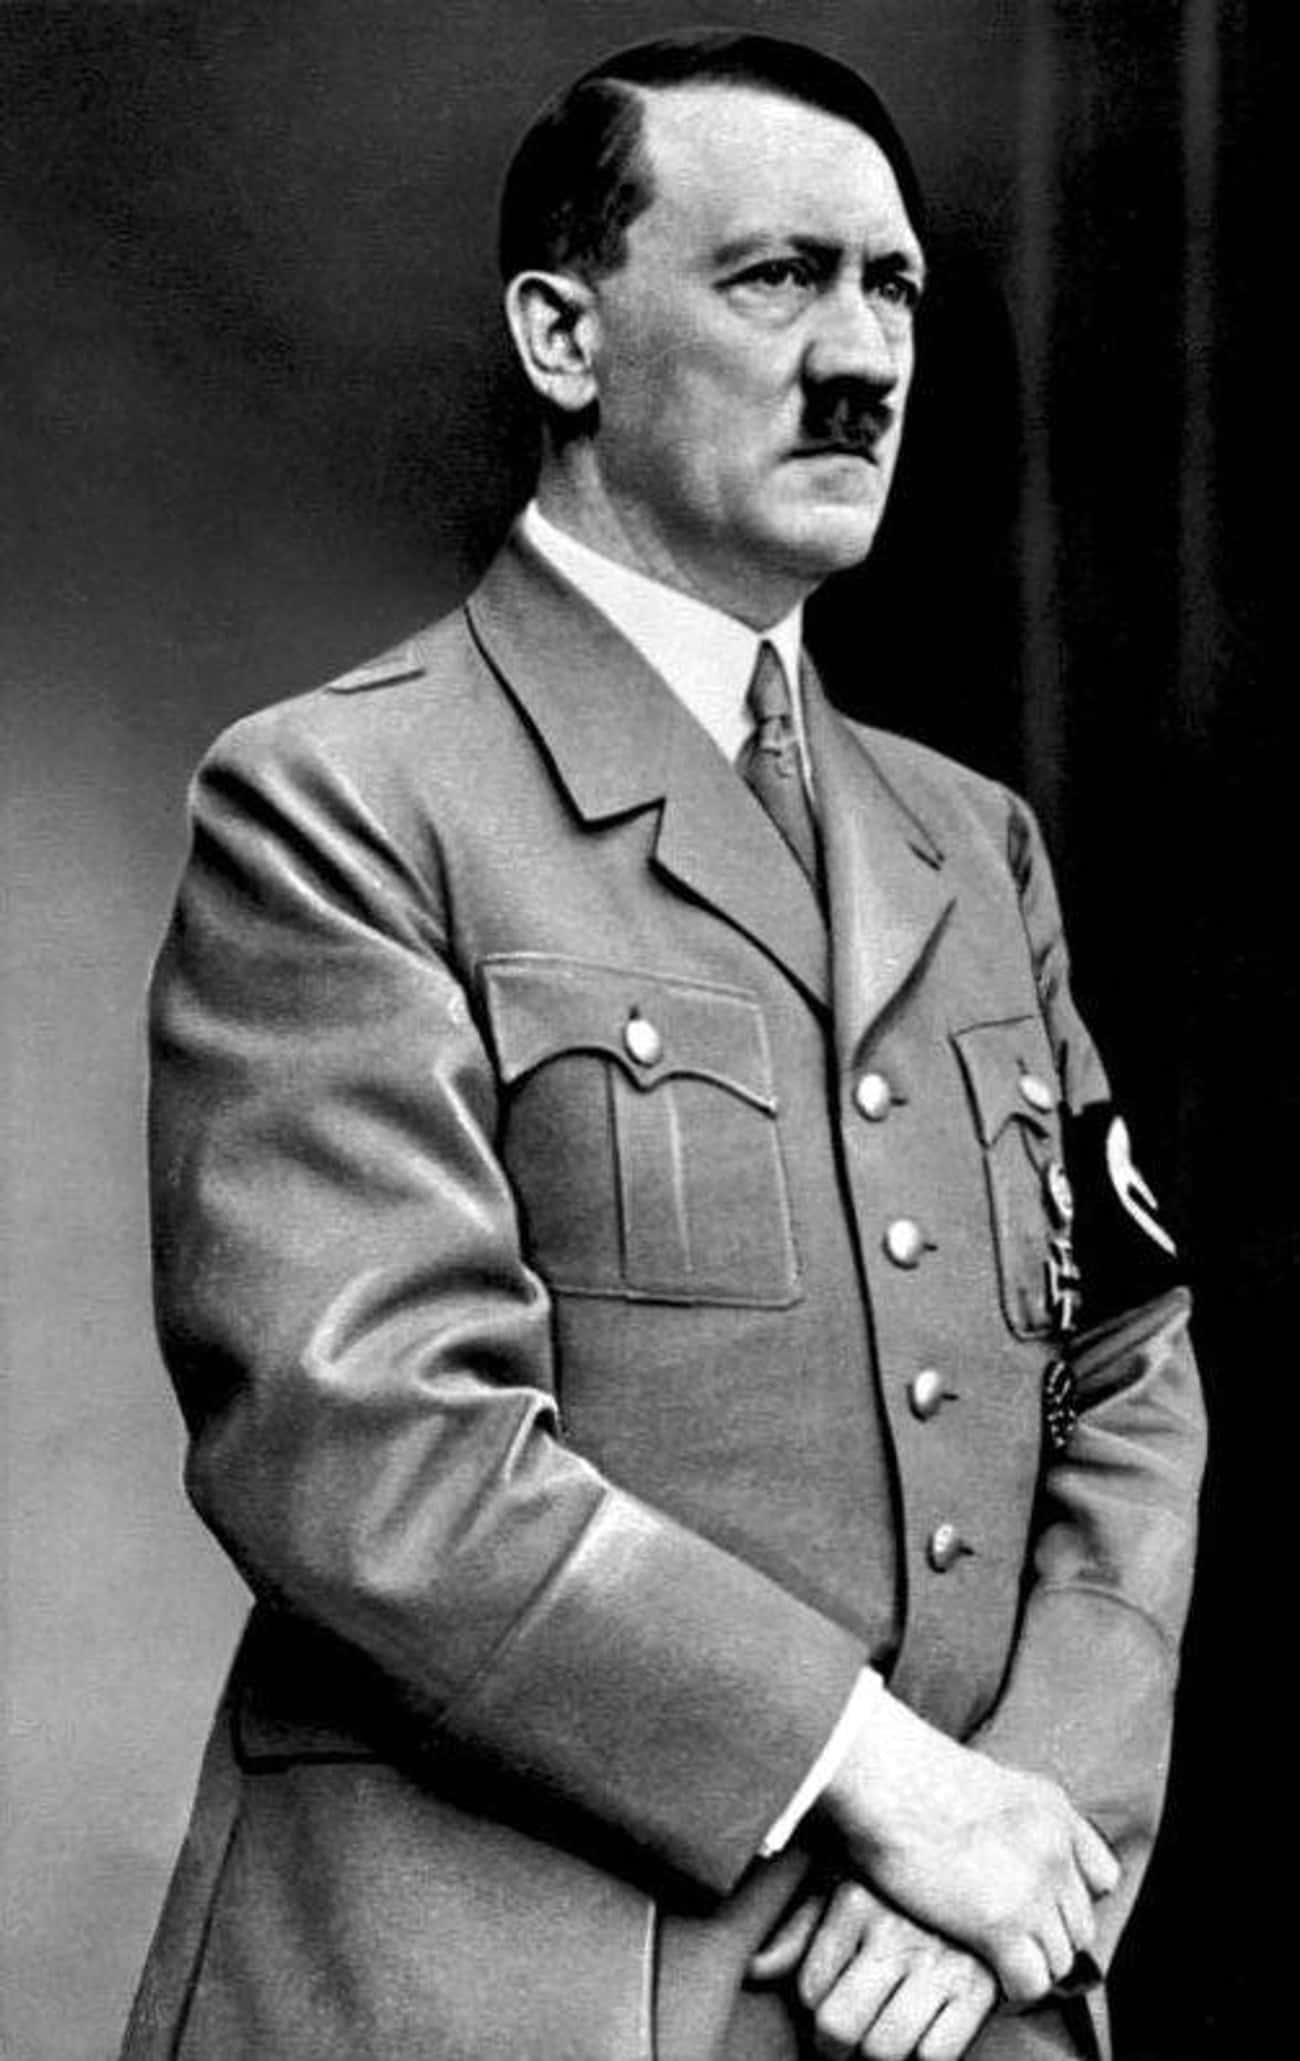 Taurus (April 20 - May 20): Adolf Hitler